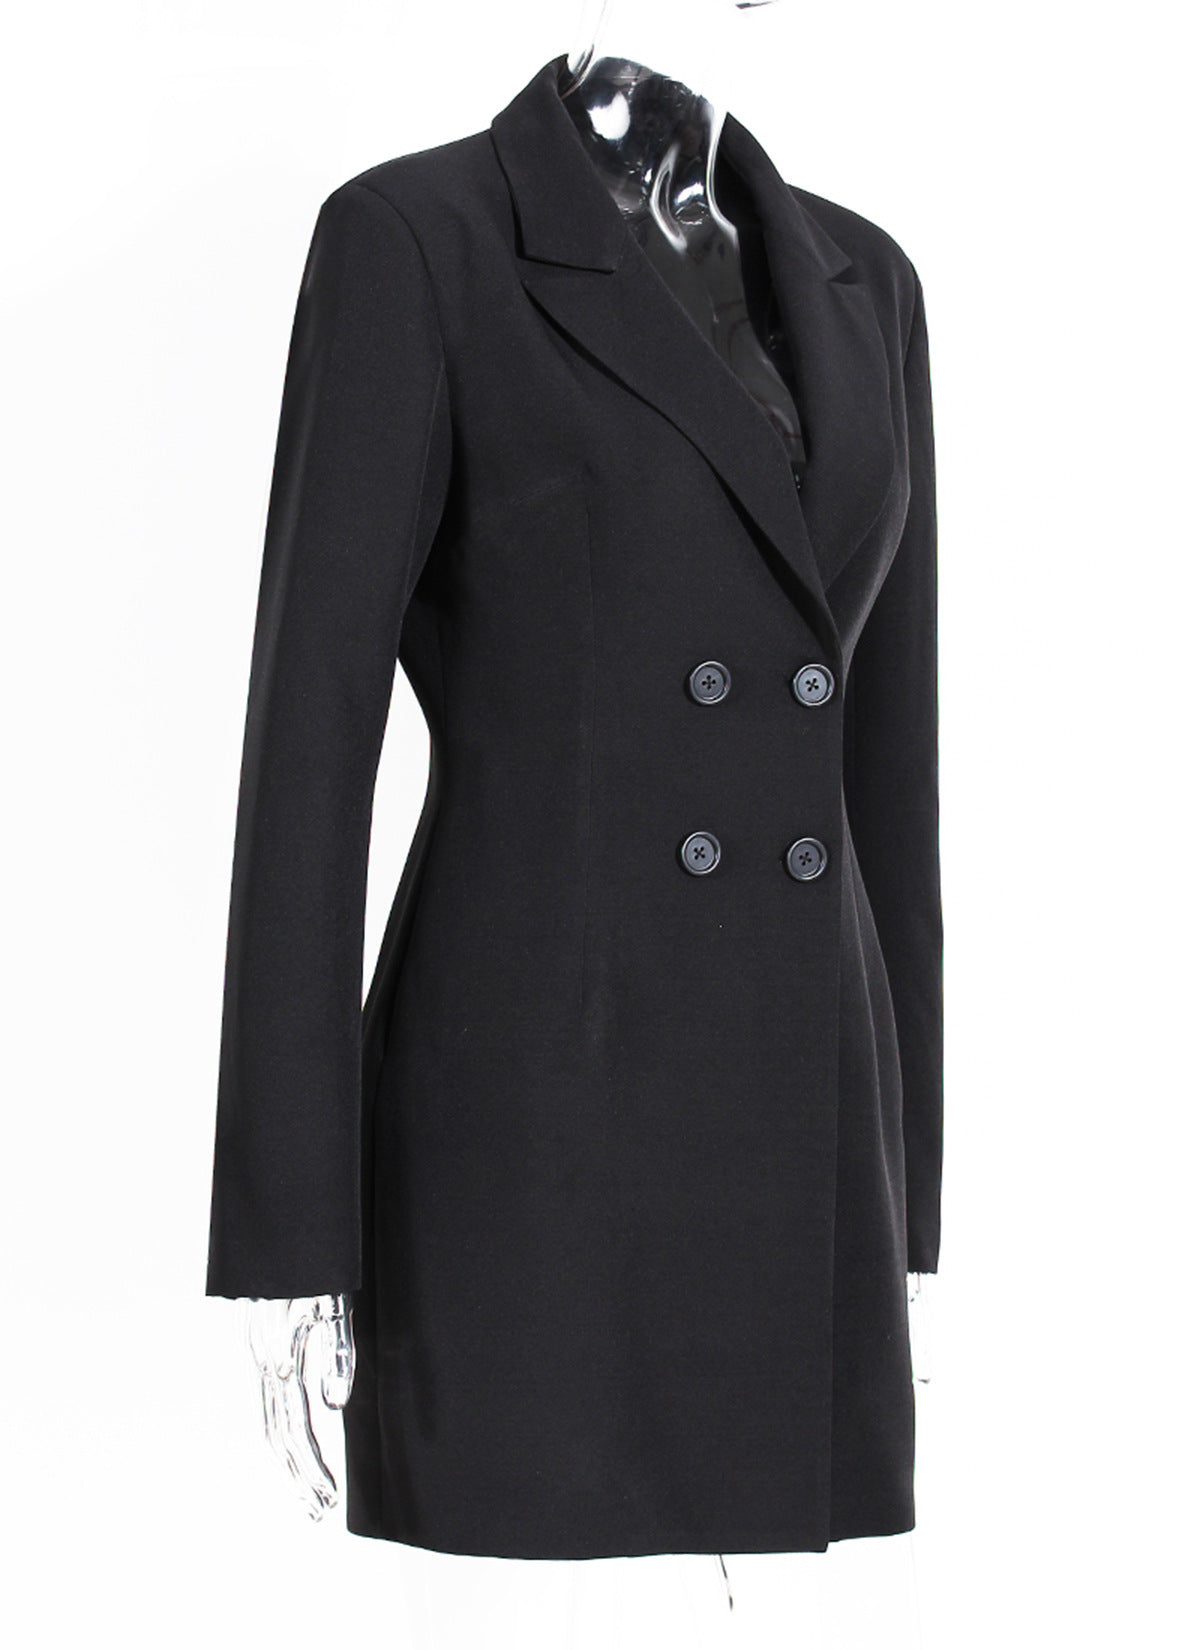 Black Blazer Overcoat and Designed Tulle Skirts